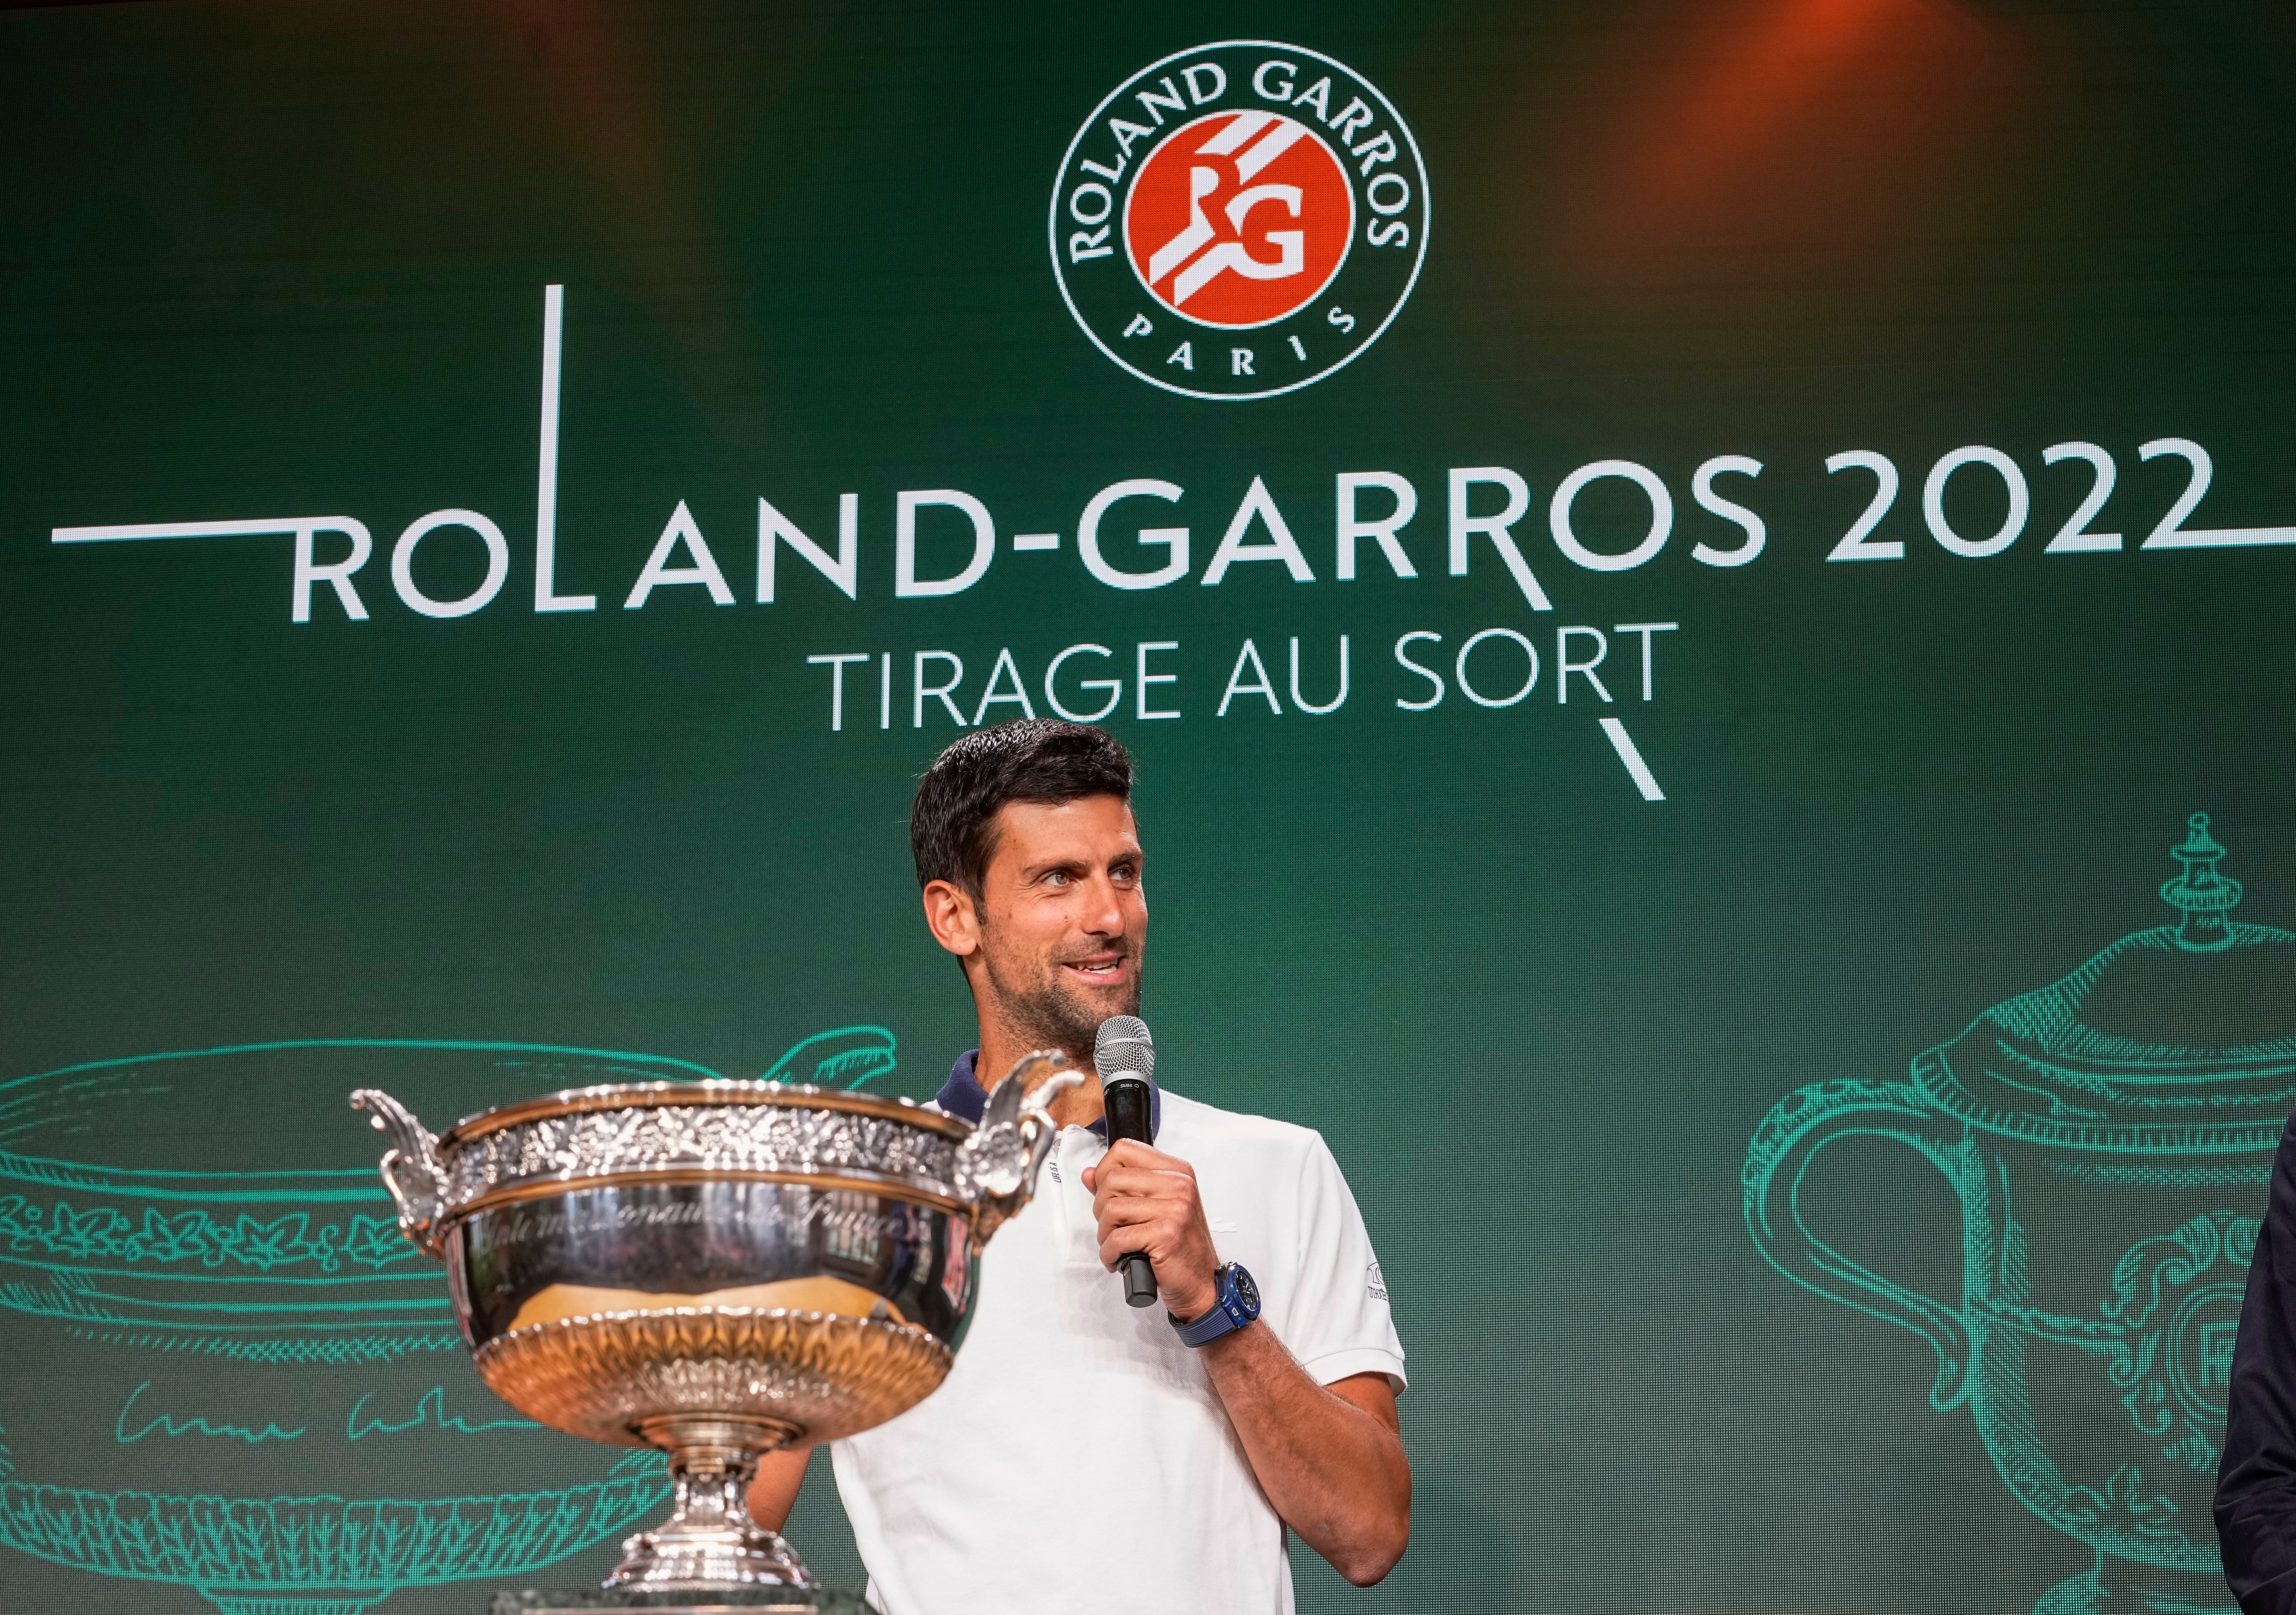 2023 Roland Garros French Open ATP Draw With Djokovic & Alcaraz In Same Half